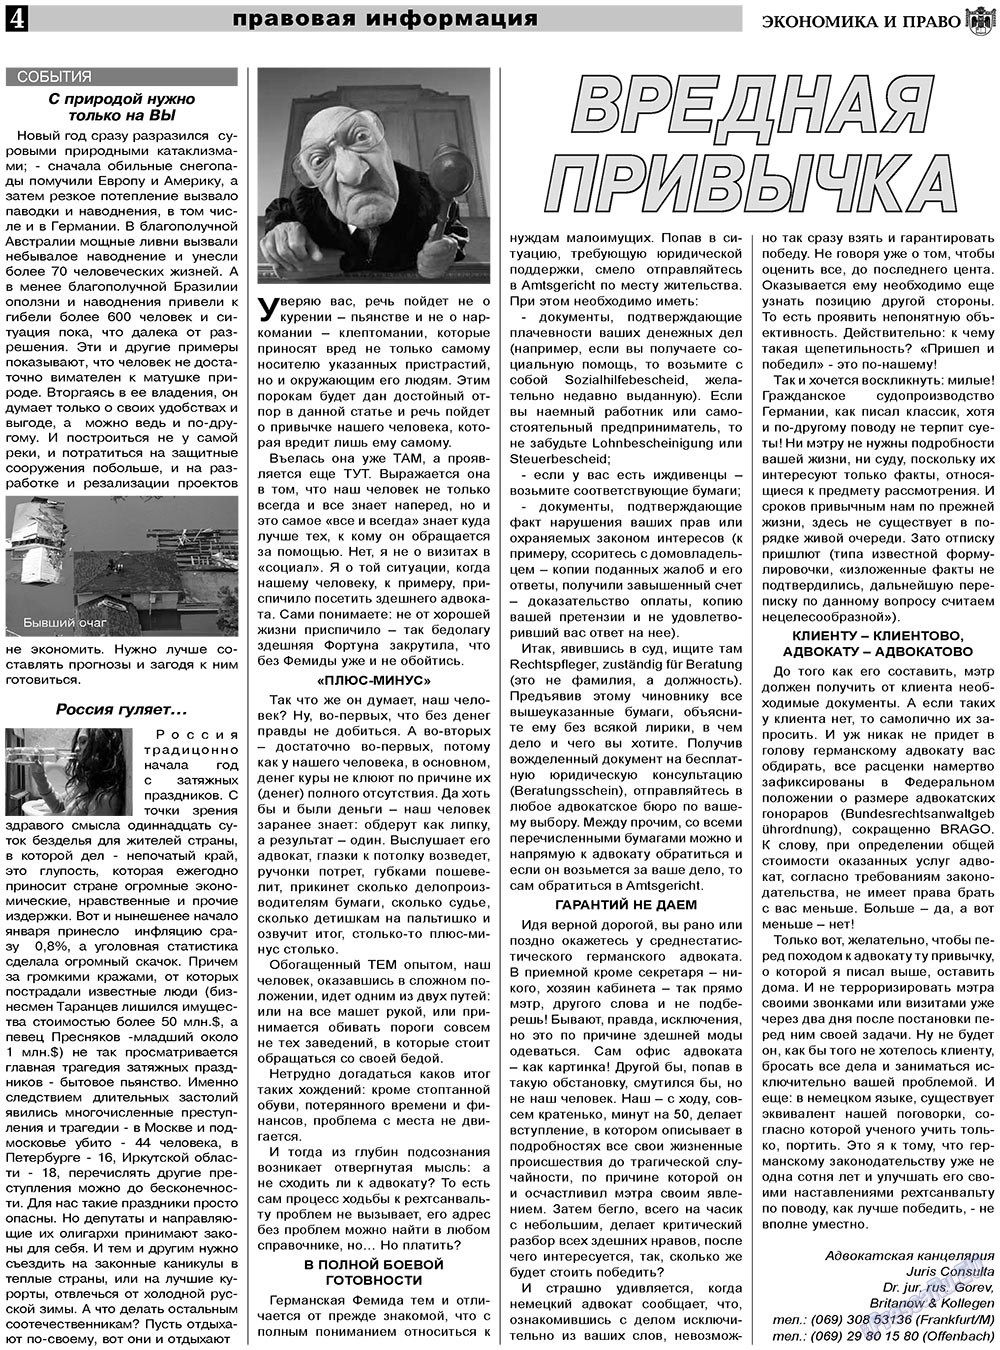 Экономика и право, газета. 2011 №2 стр.4